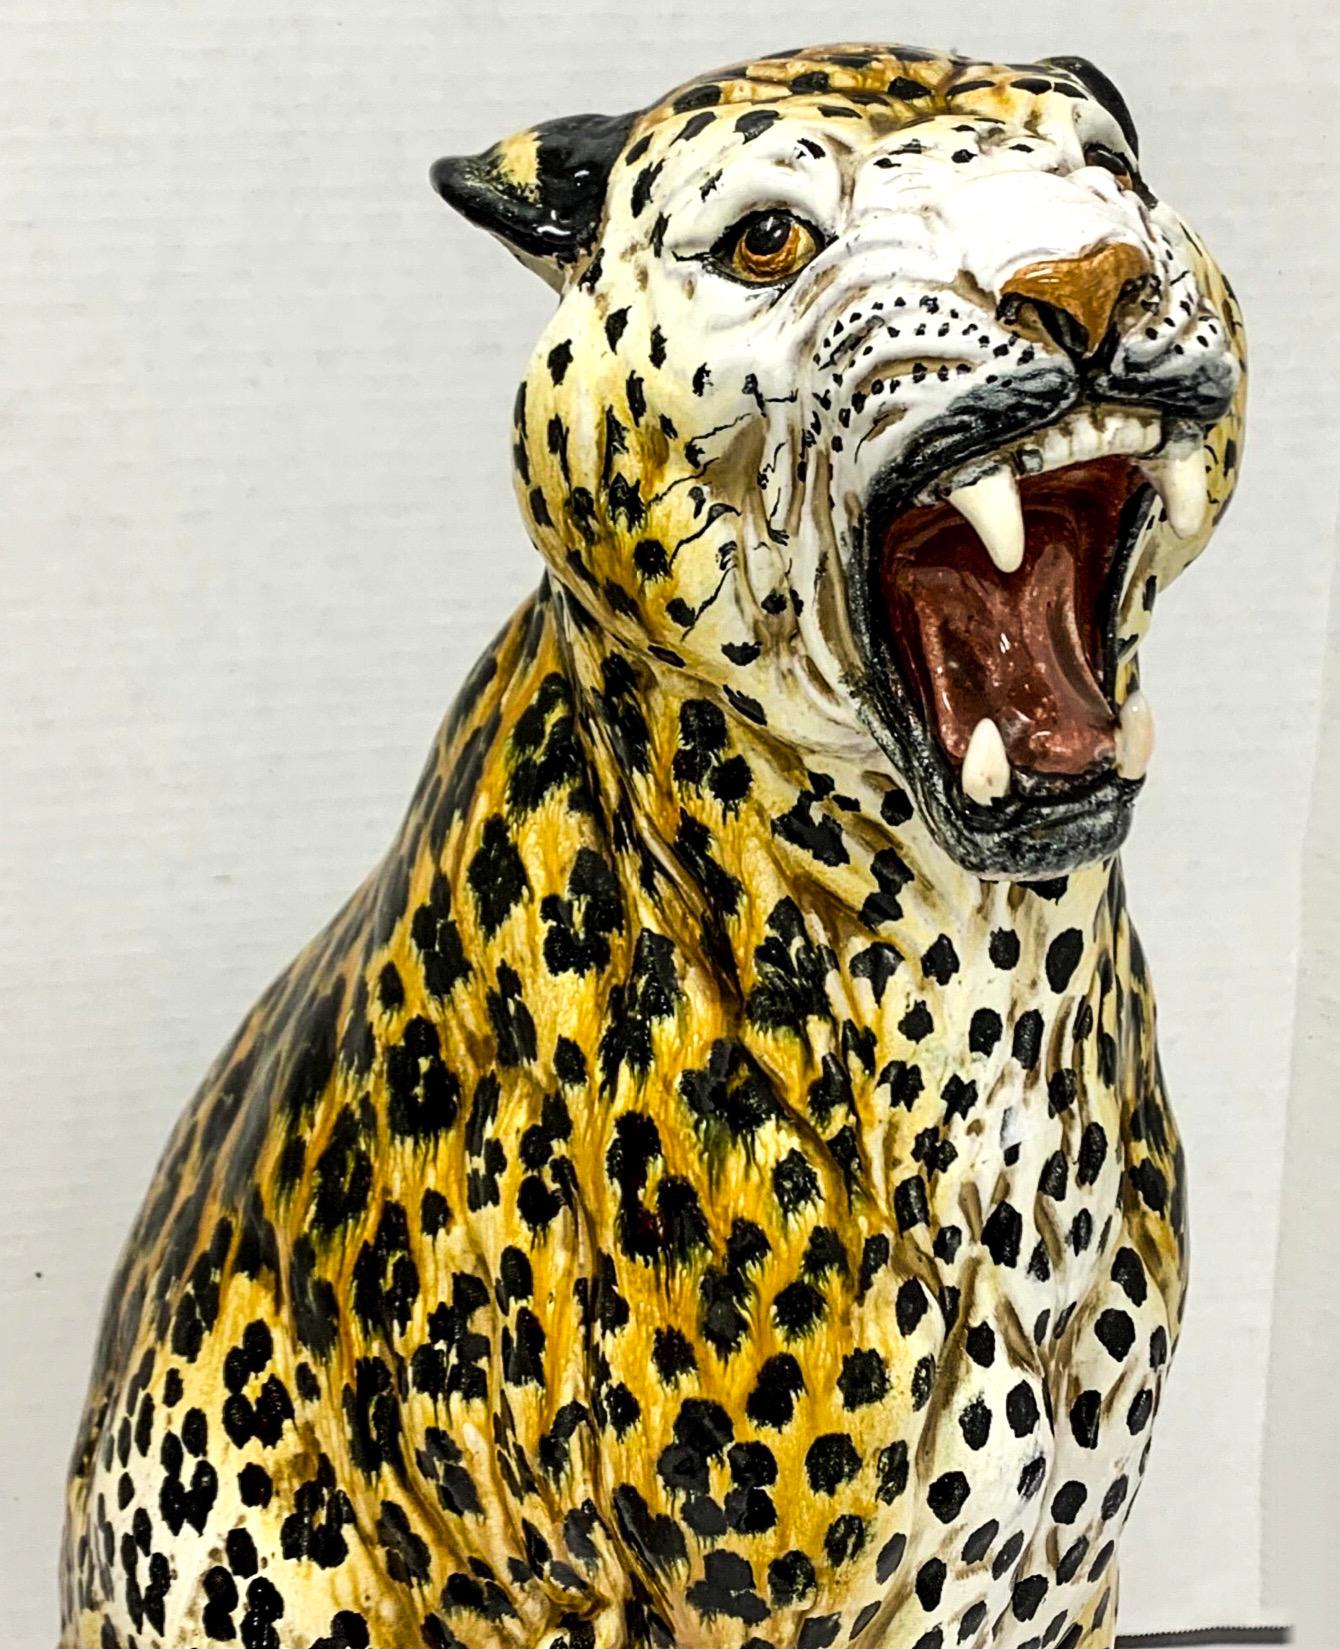 J'adore mes animaux en terre cuite ! Il s'agit d'un léopard italien à grande échelle de l'époque Hollywood Regency. Il est en très bon état avec sa finition vibrante peinte à la main.